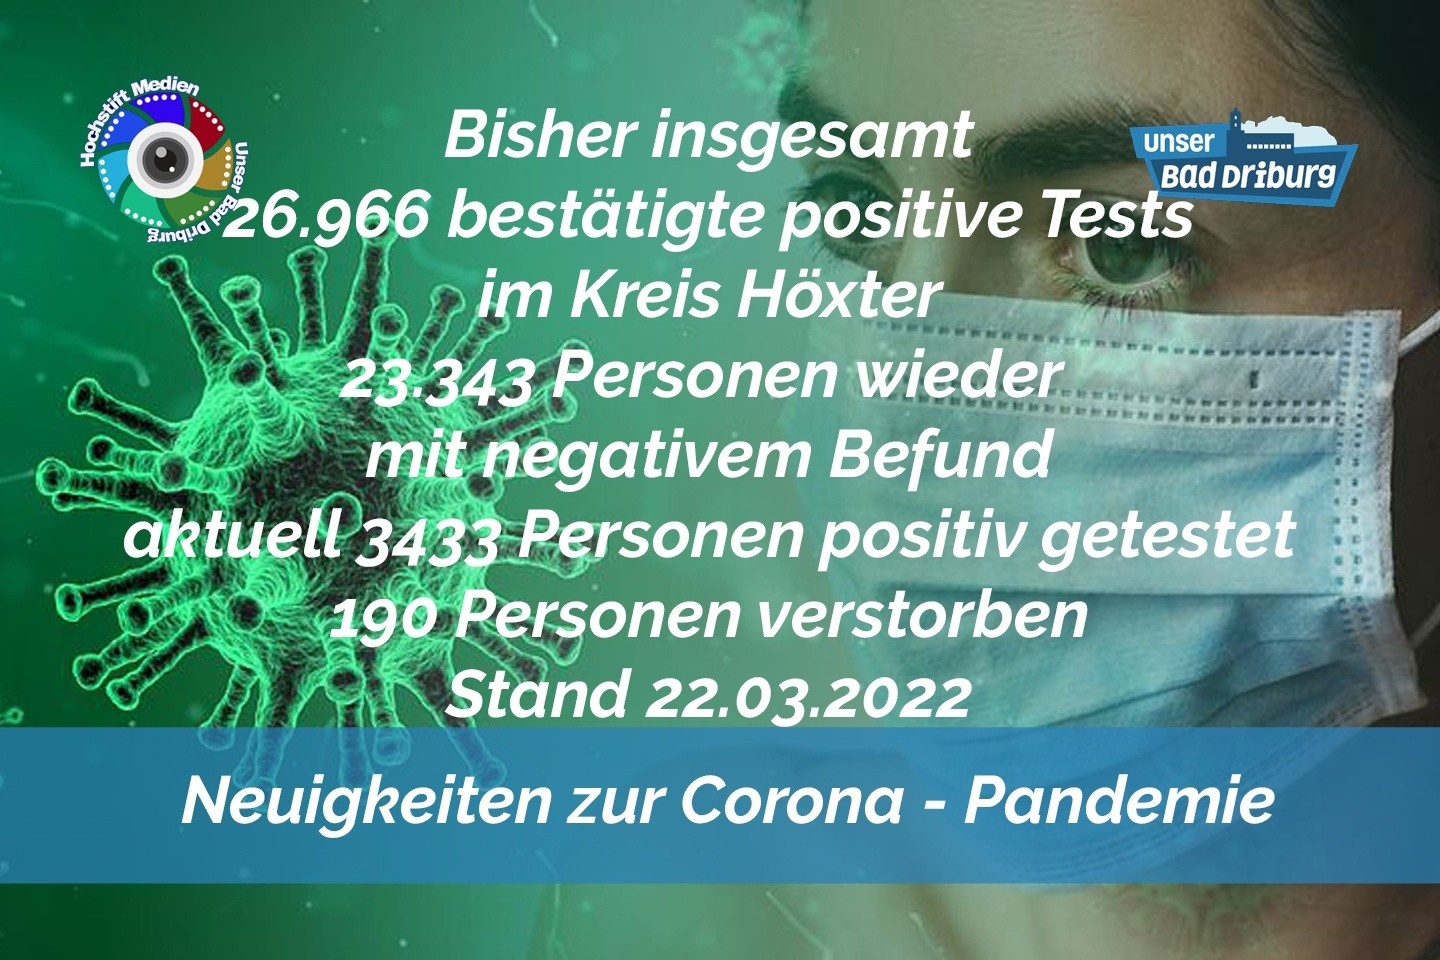 Update 22. März 2022: 450 weitere amtlich positive Tests im Kreis Höxter